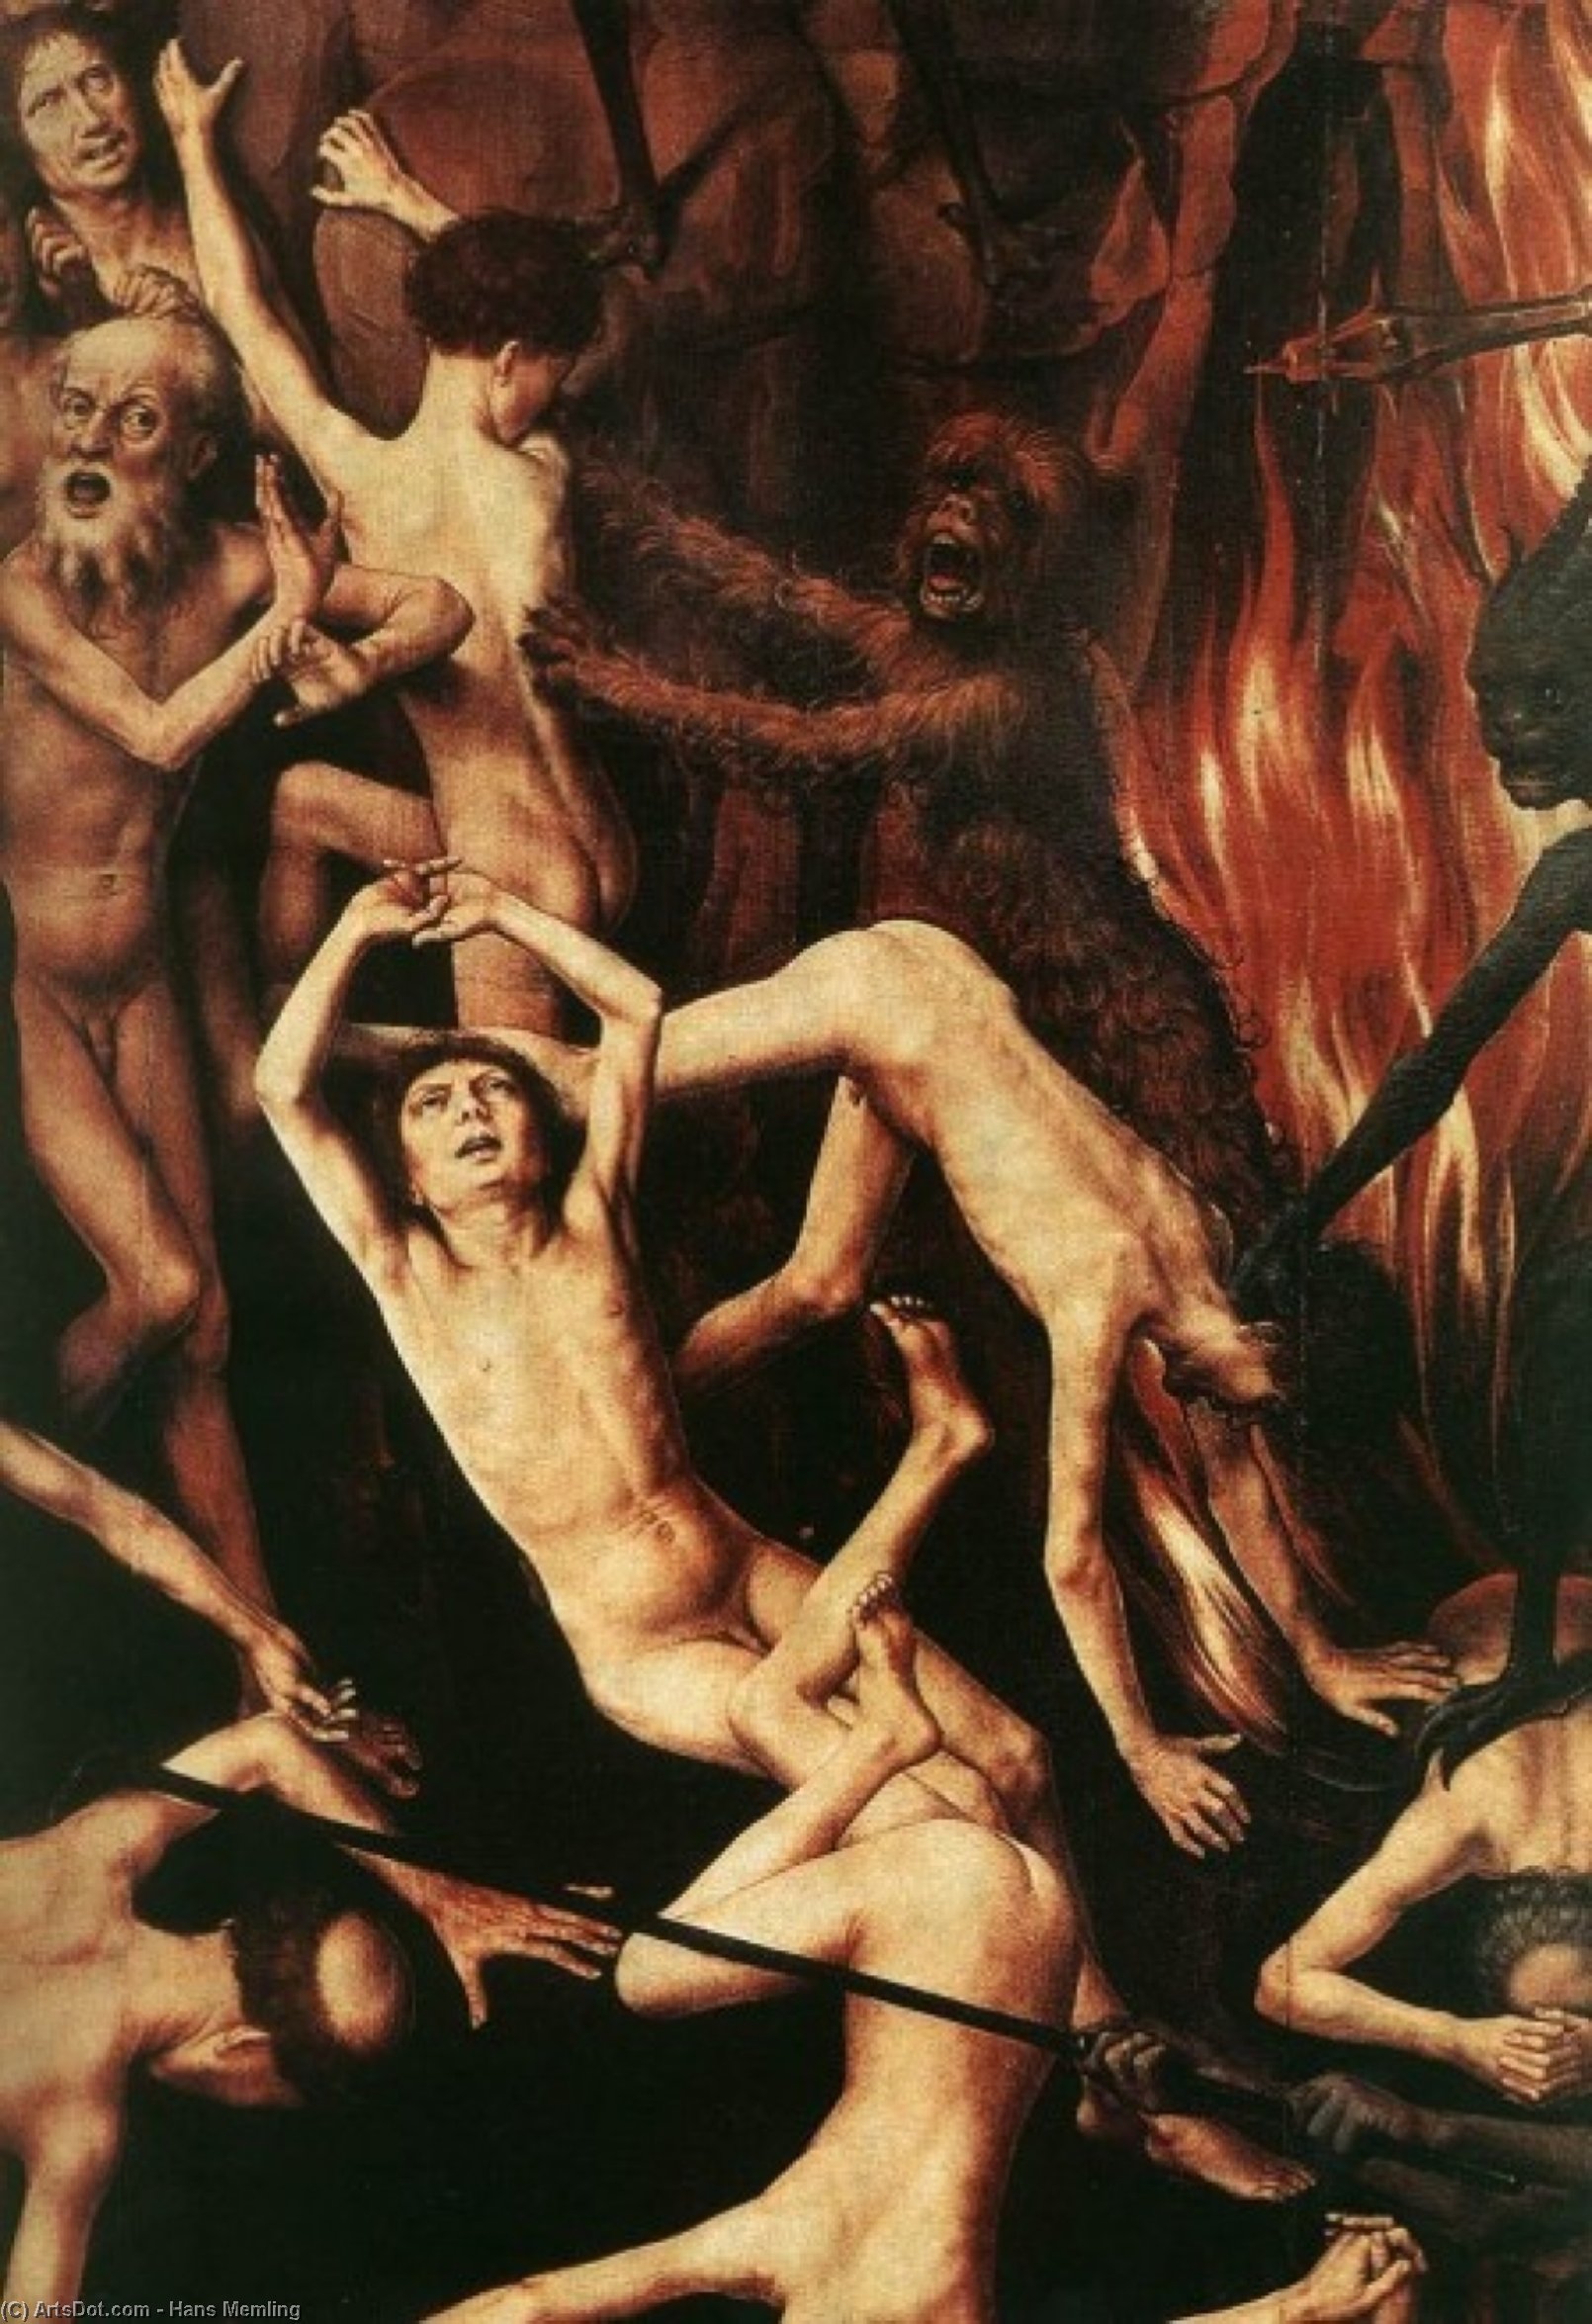 WikiOO.org - אנציקלופדיה לאמנויות יפות - ציור, יצירות אמנות Hans Memling - Last Judgment Triptych (detail) (12)